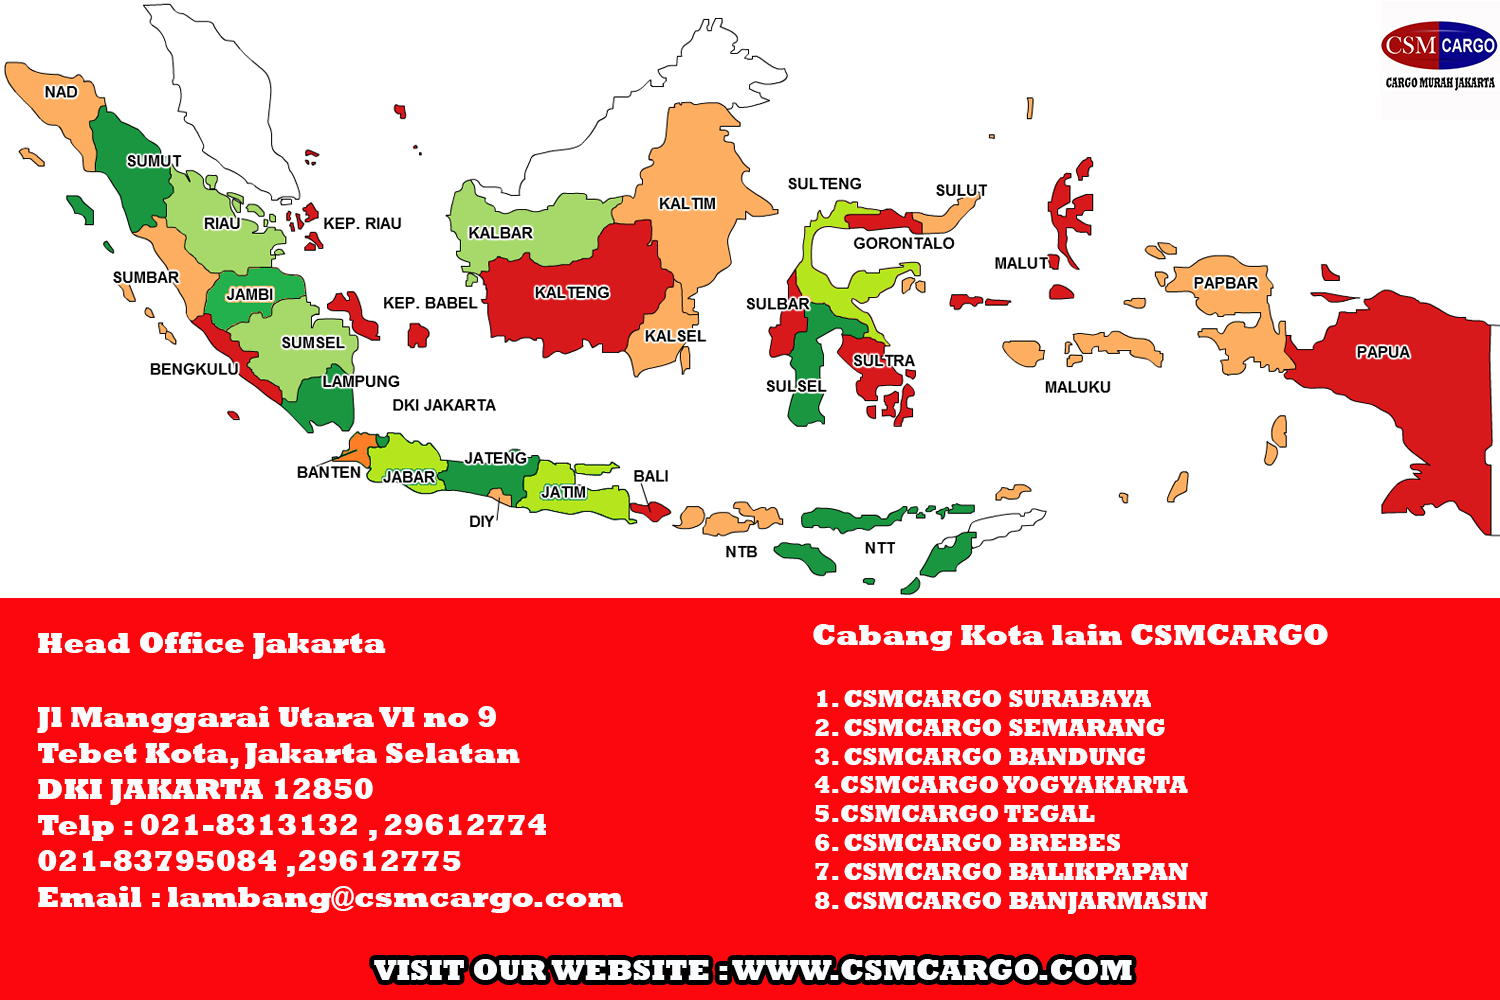 CSMCARGO INDONESIA